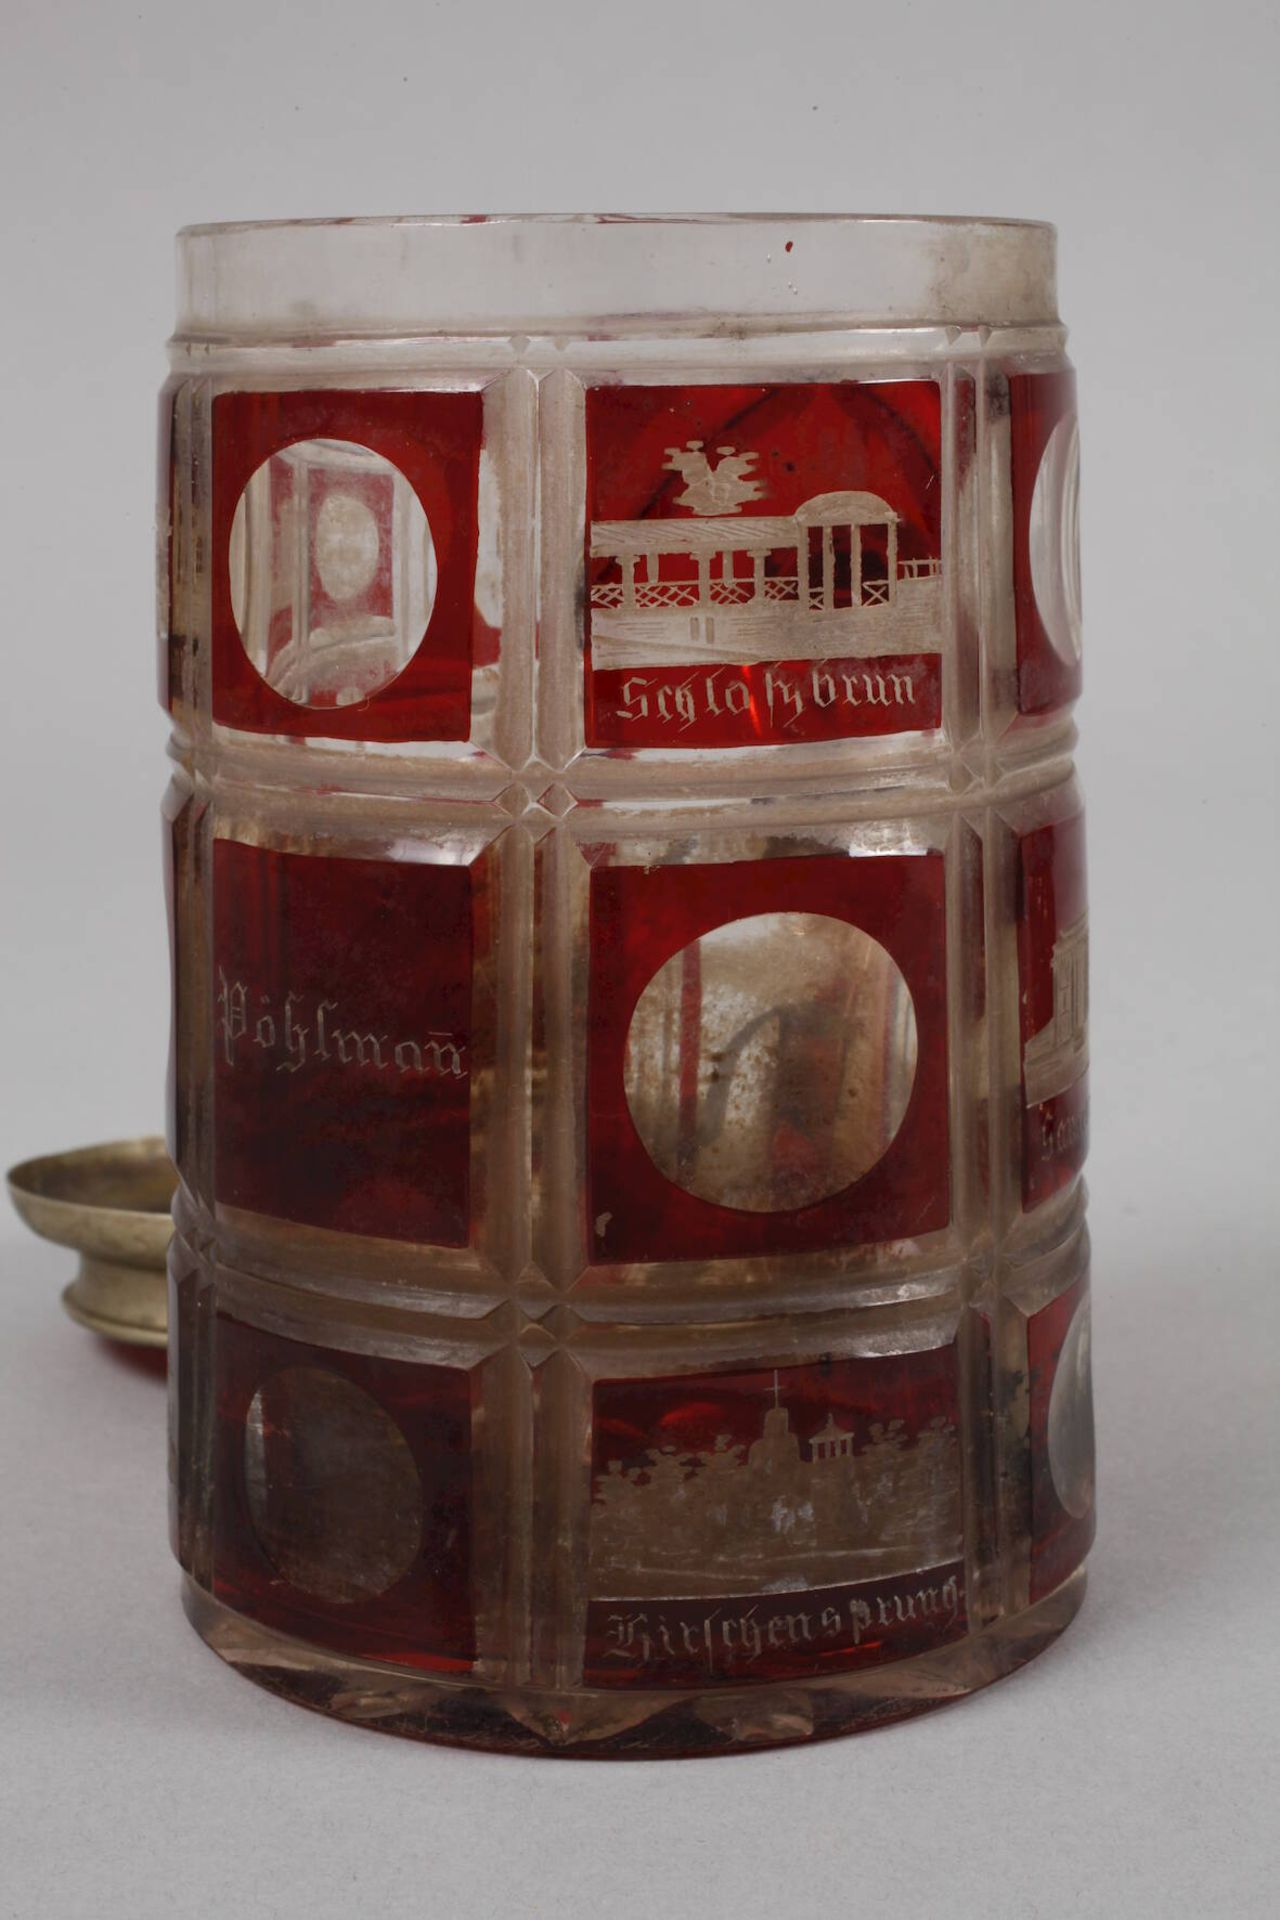 Erinnerungskrug Karlsbad mit Schreibset19. Jh., farbloses Glas, rubinrot gebeizt, geschnittene - Bild 3 aus 4